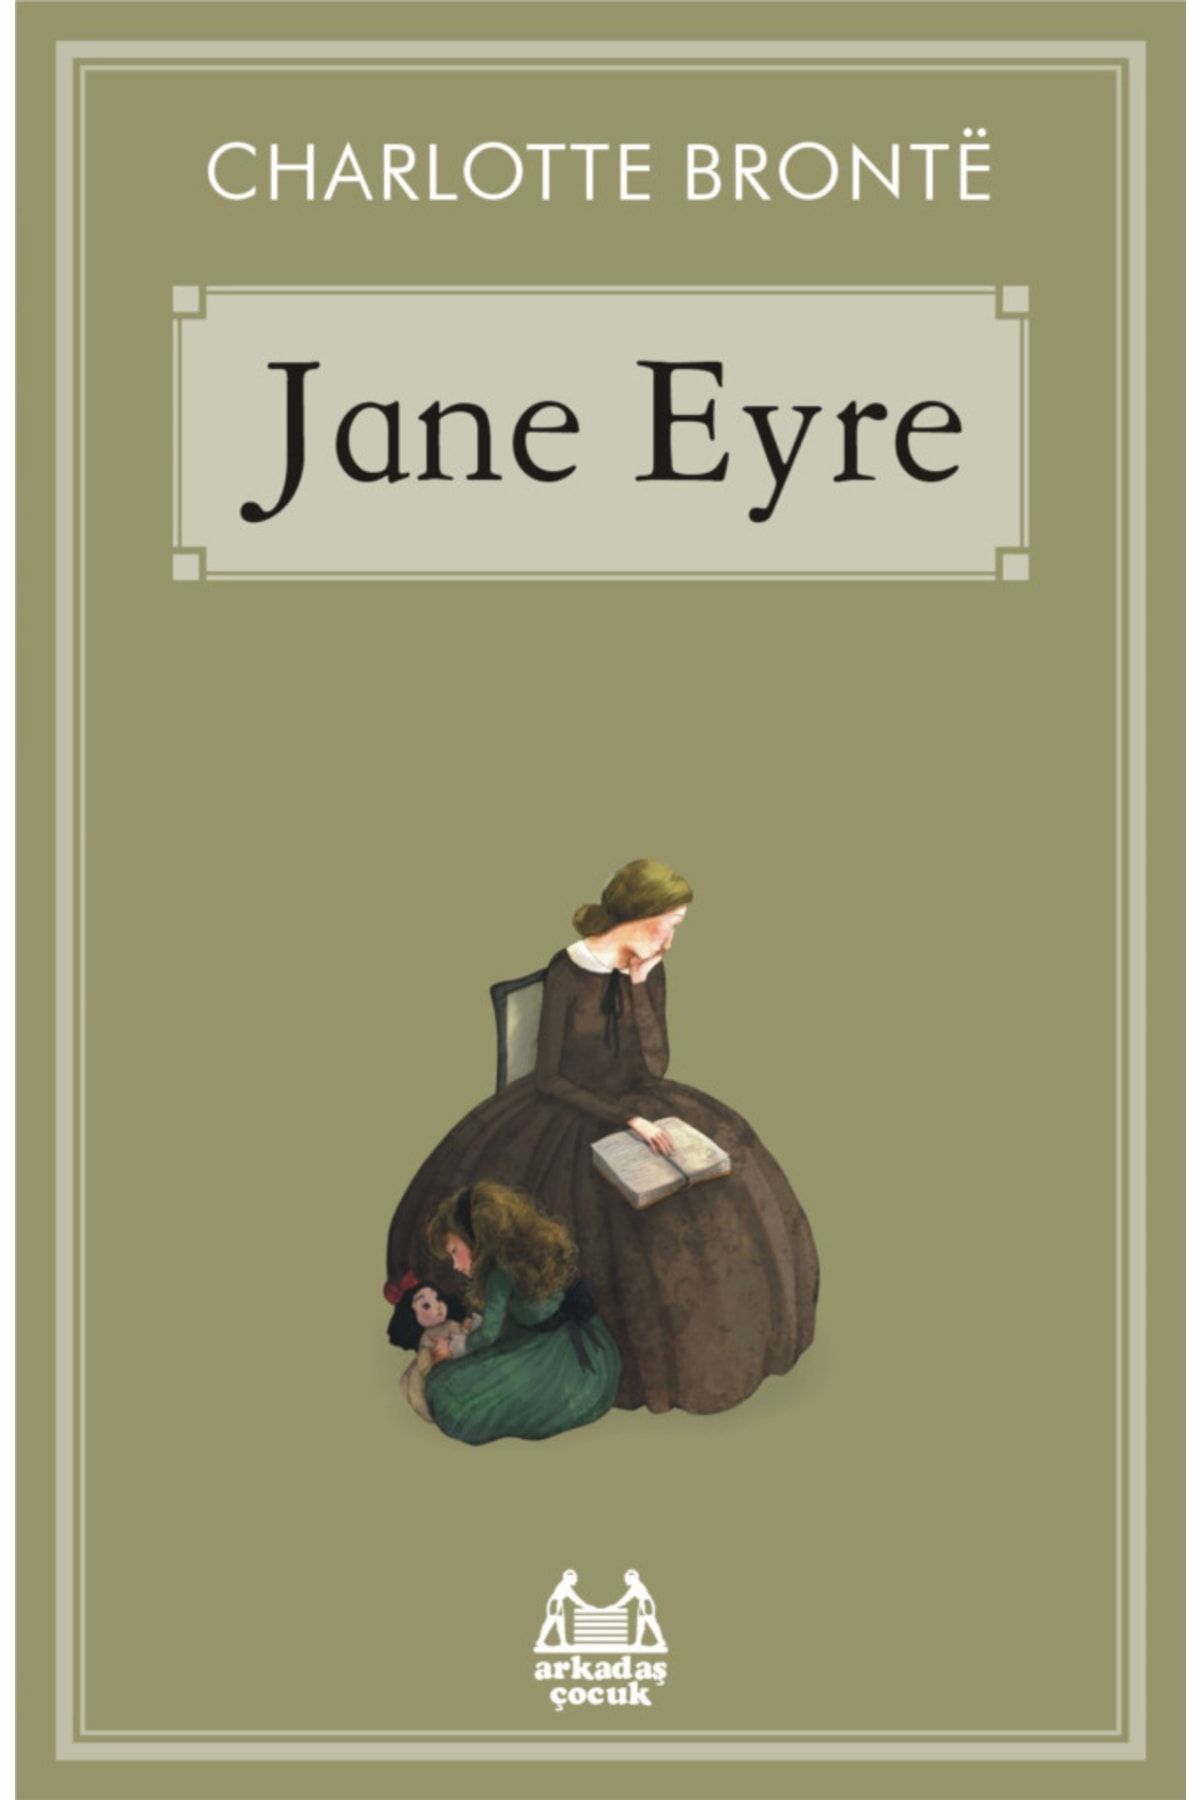 Arkadaş Yayıncılık Jane Eyre - Charlotte Bronte